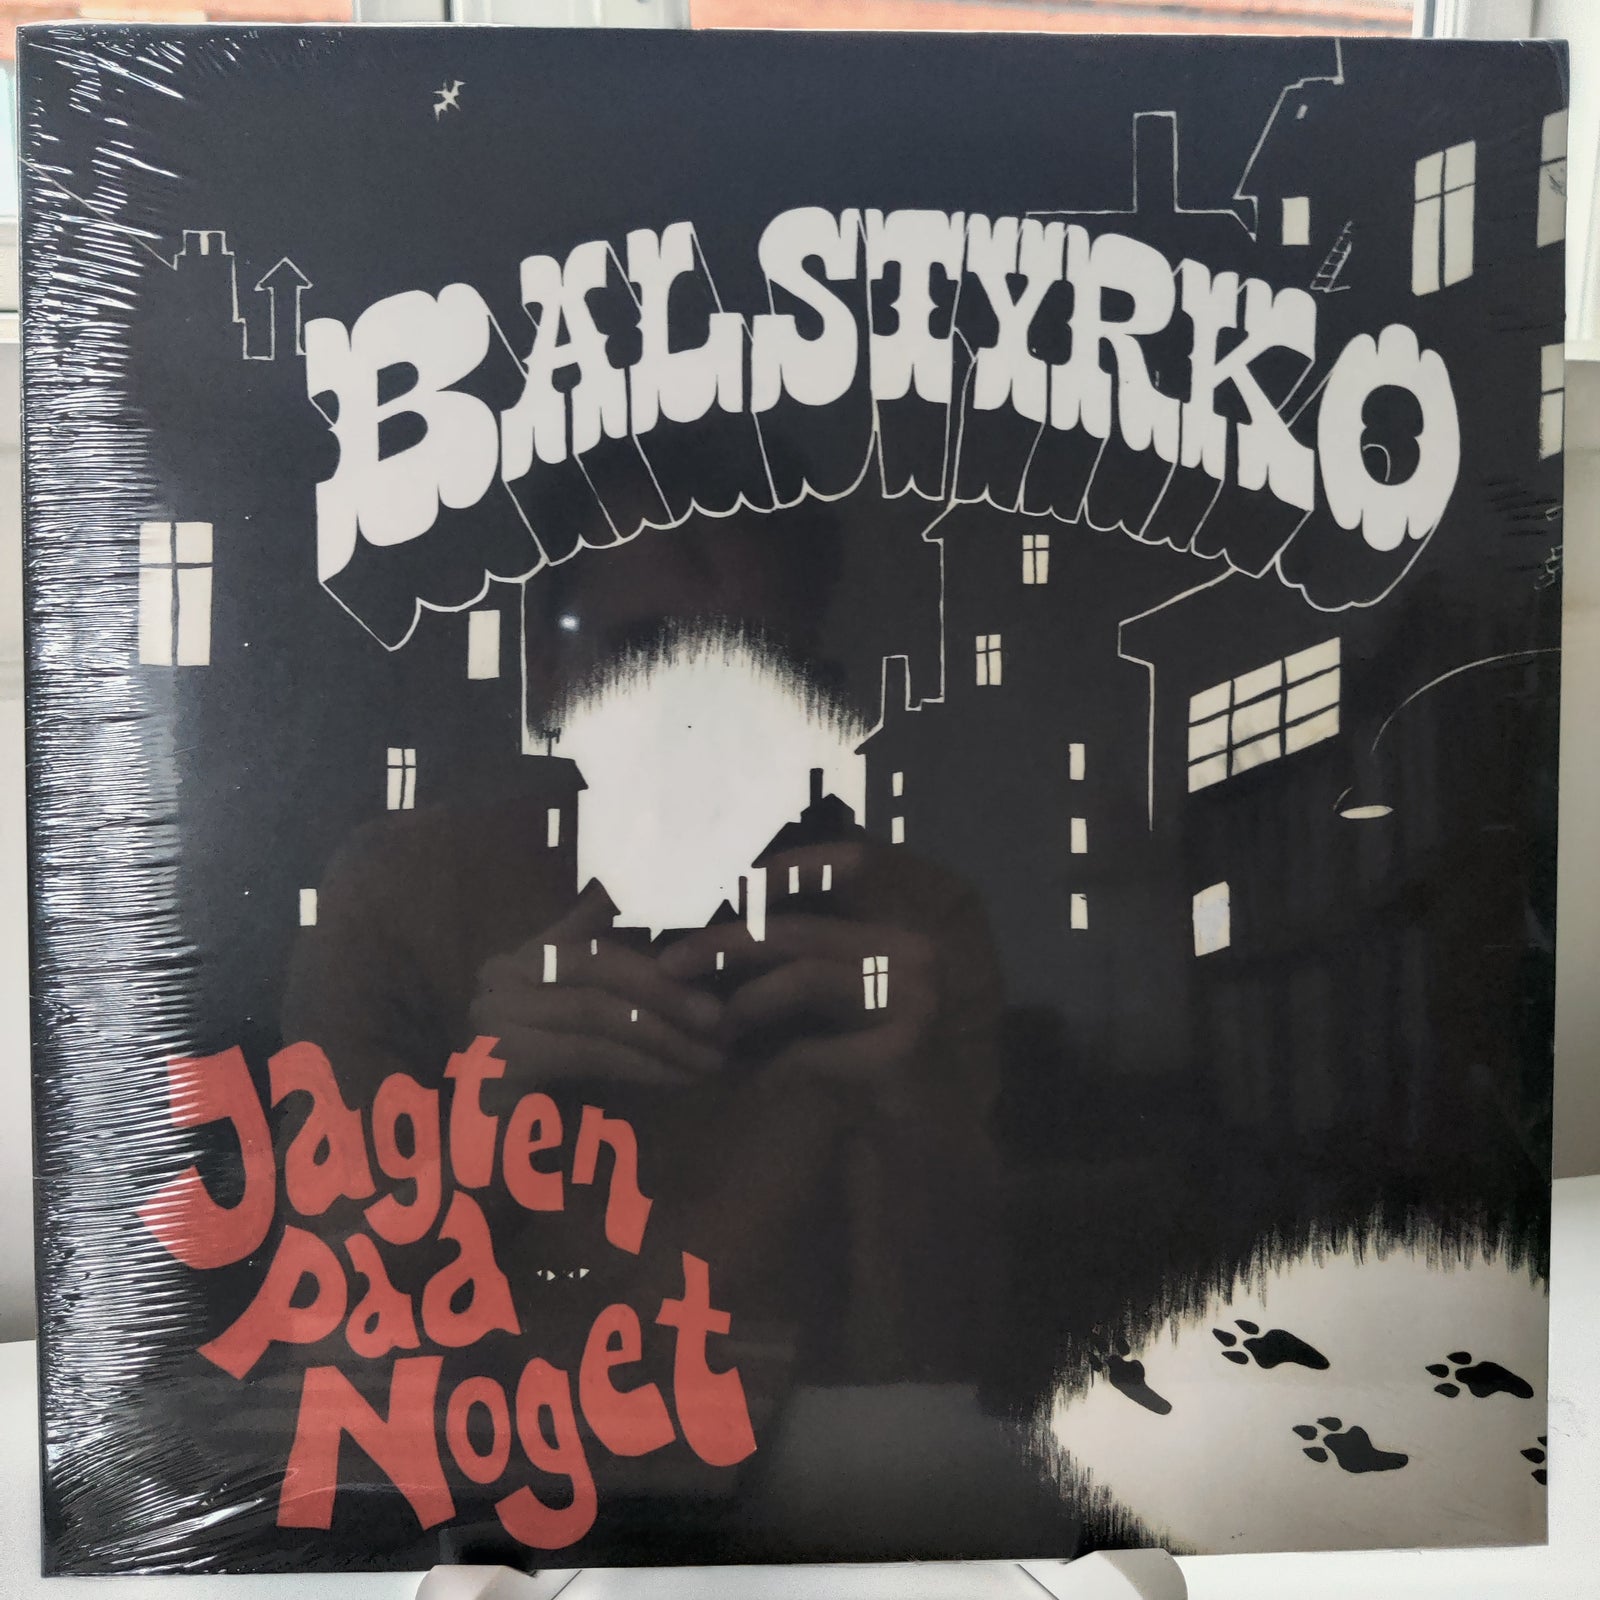 I detaljer Bevægelse tæt LP, Balstyrko, Jagten På Noget – dba.dk – Køb og Salg af Nyt og Brugt